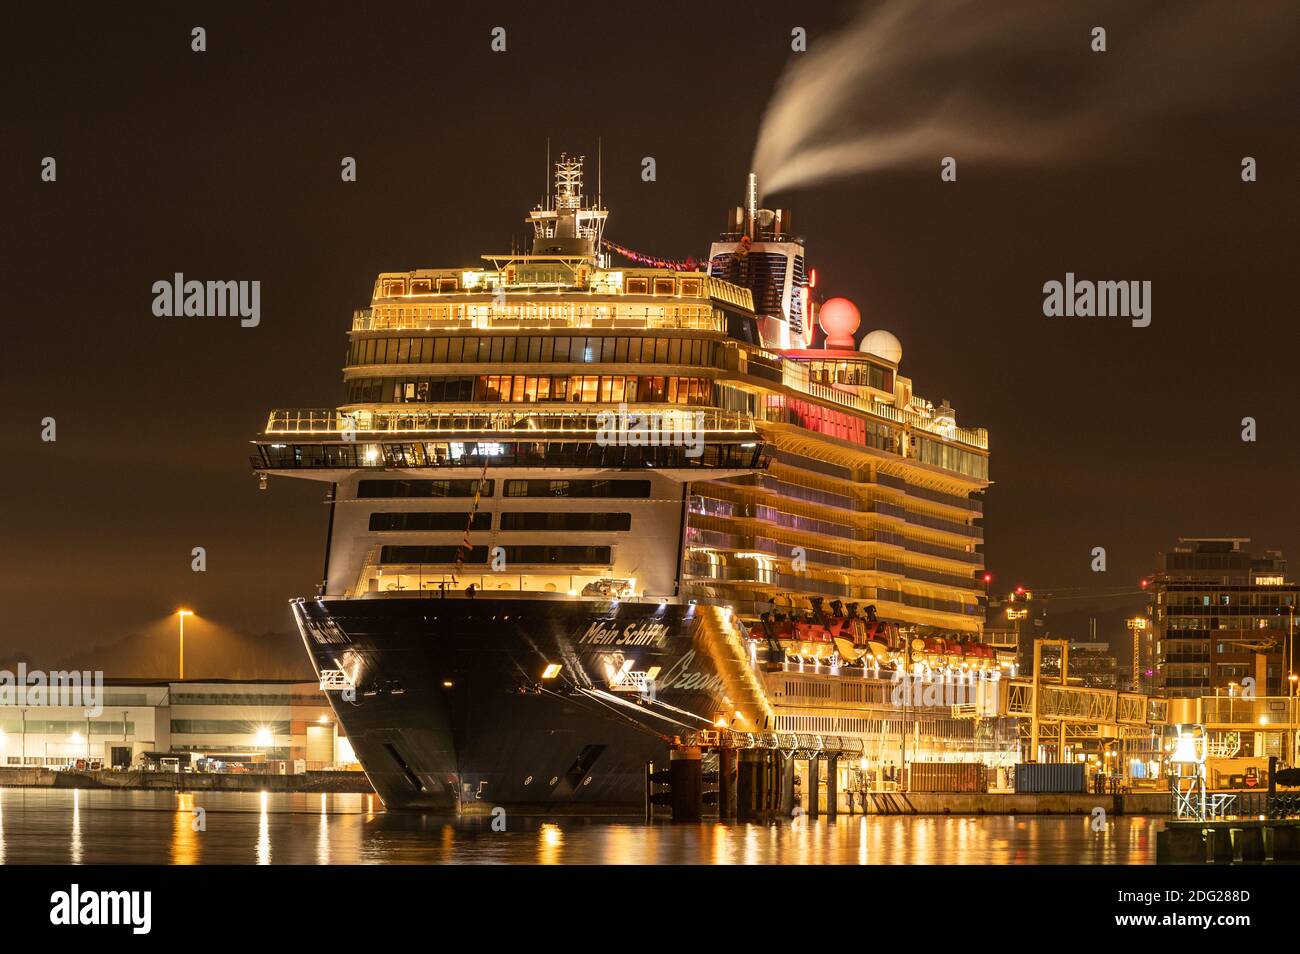 Das Kreuzfahrtschiff Mein Schiff 1 ist am Kreuzfahrthafen 'Ostseekai' im Hafen von Kiel festgemacht. Nightshot Stockfoto